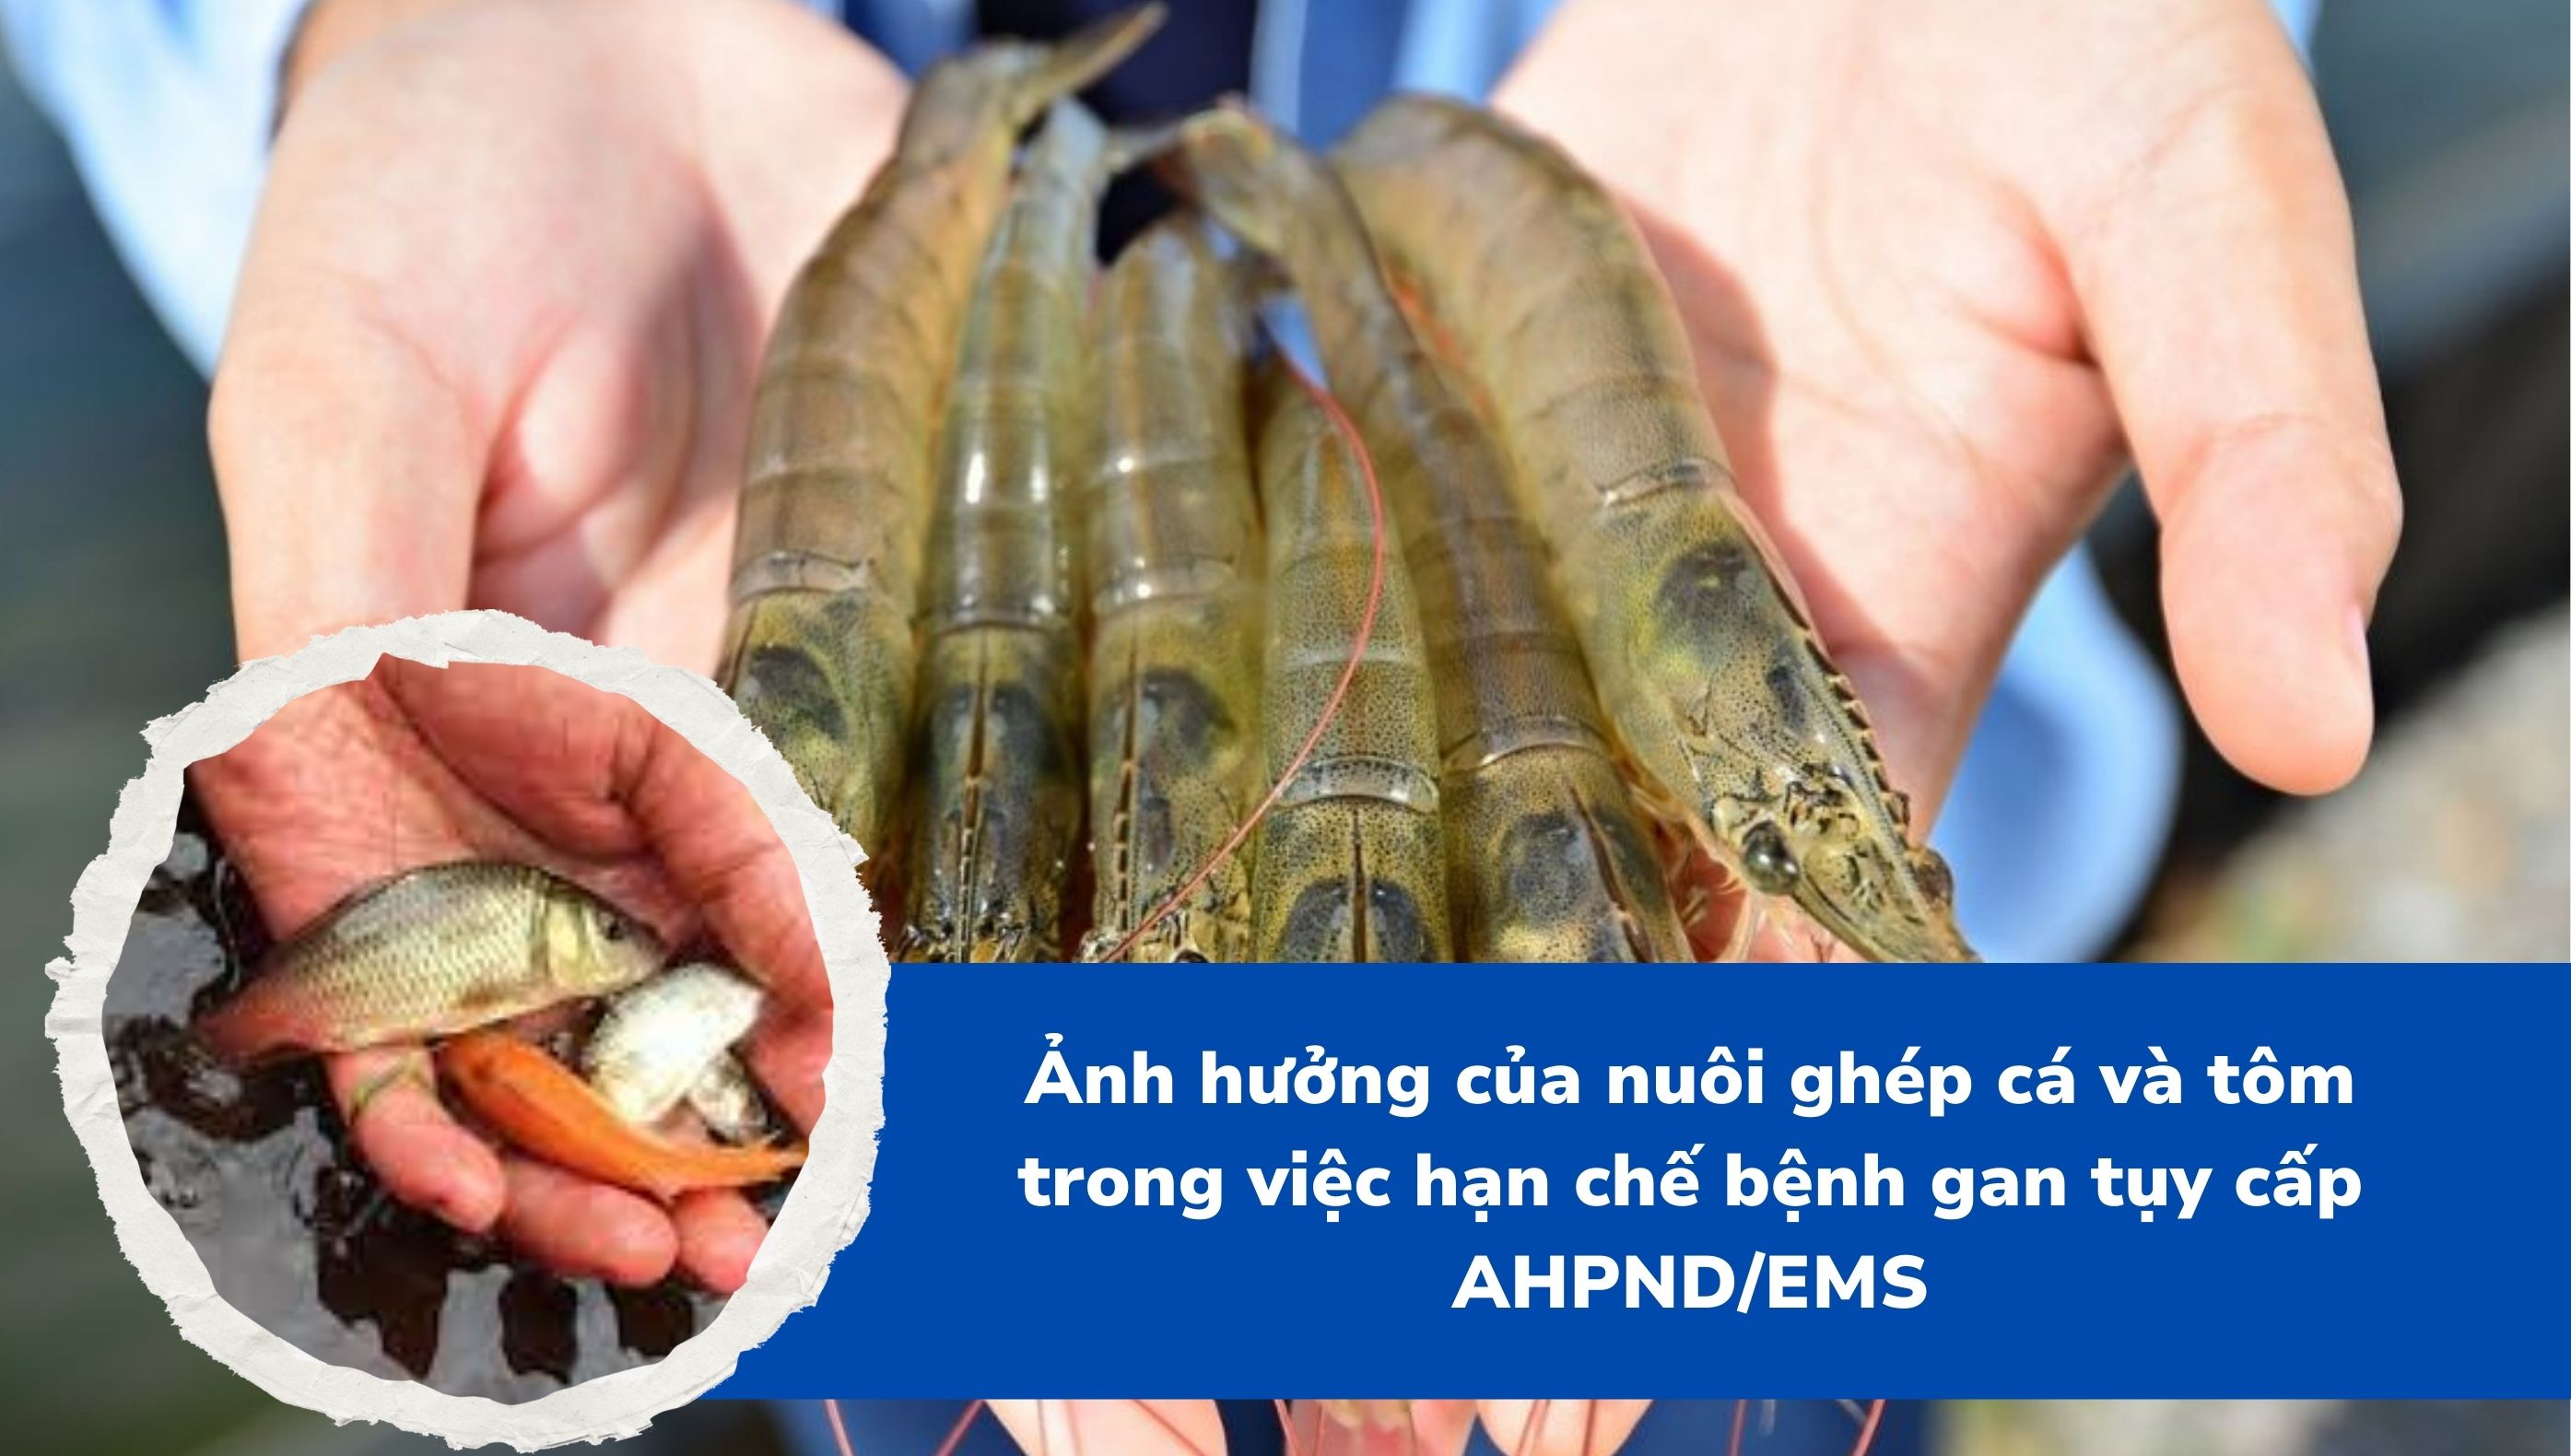 Ảnh hưởng của nuôi ghép cá và tôm trong việc hạn chế bệnh gan tụy cấp AHPND/EMS